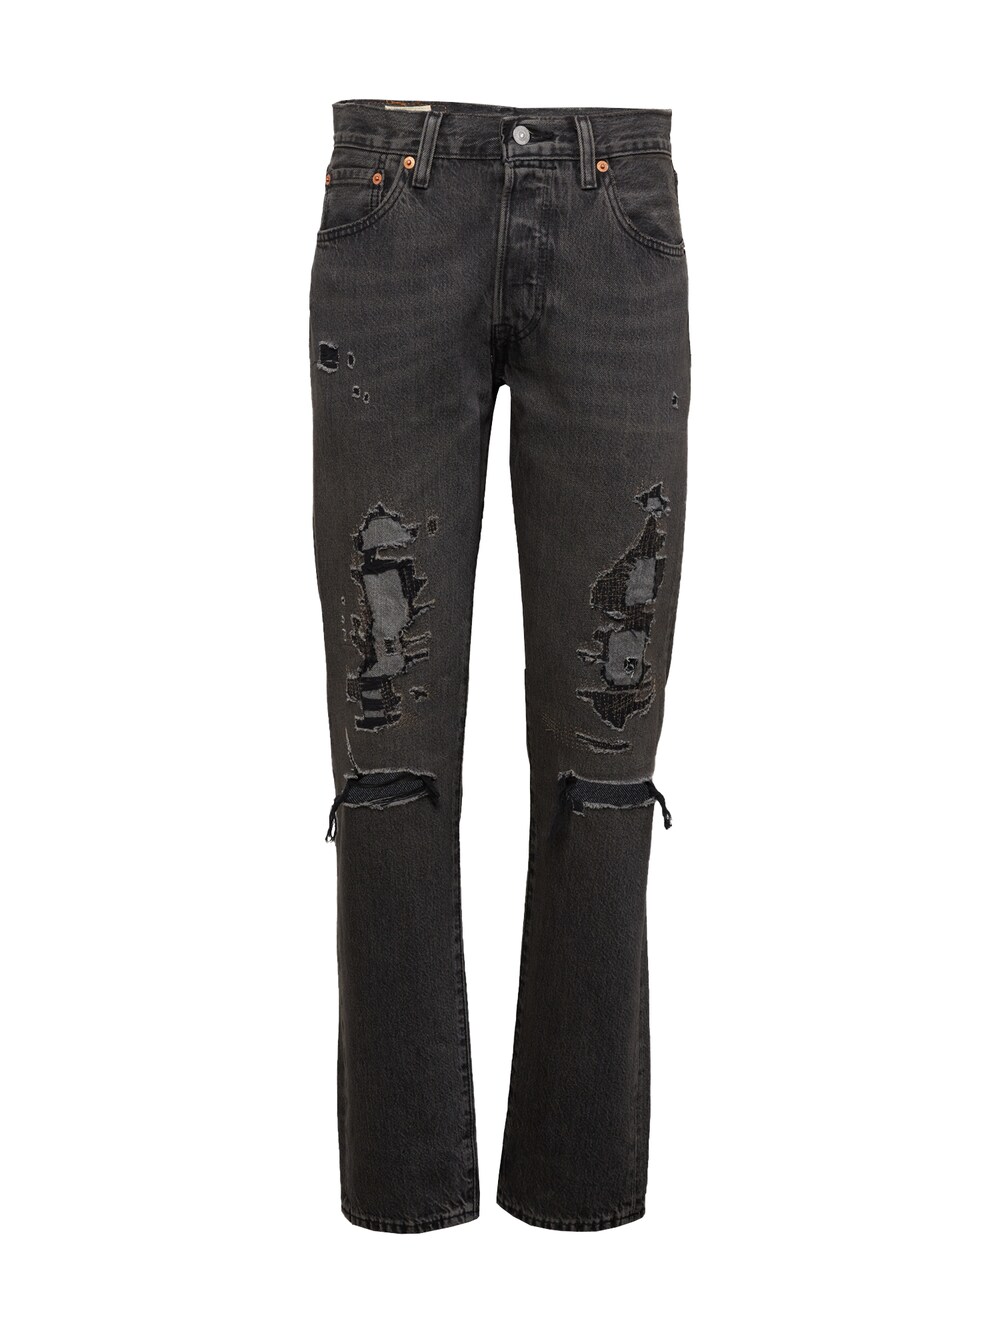 Обычные джинсы LEVIS 501 54, черный